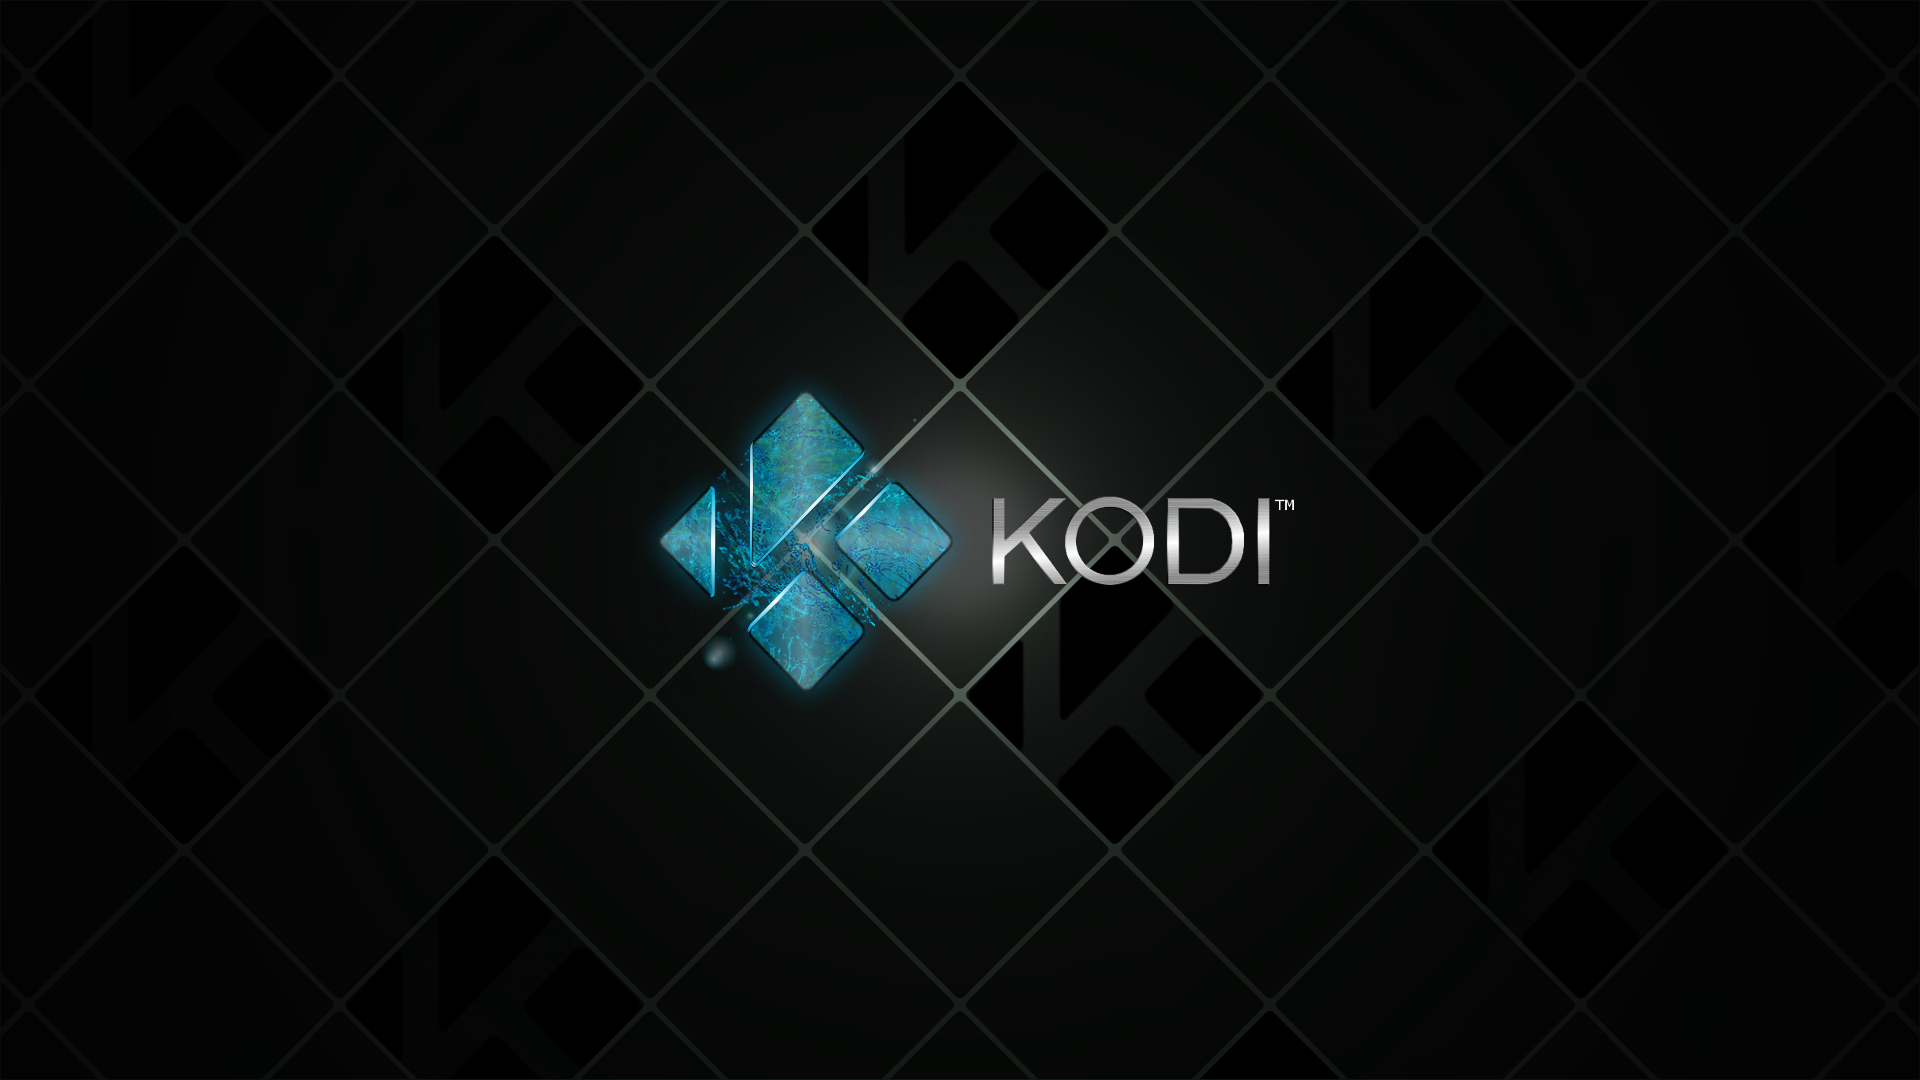 Kodi Wallpaper. Kodi Wallpaper, Kodi Movie Background and Kodi App Background